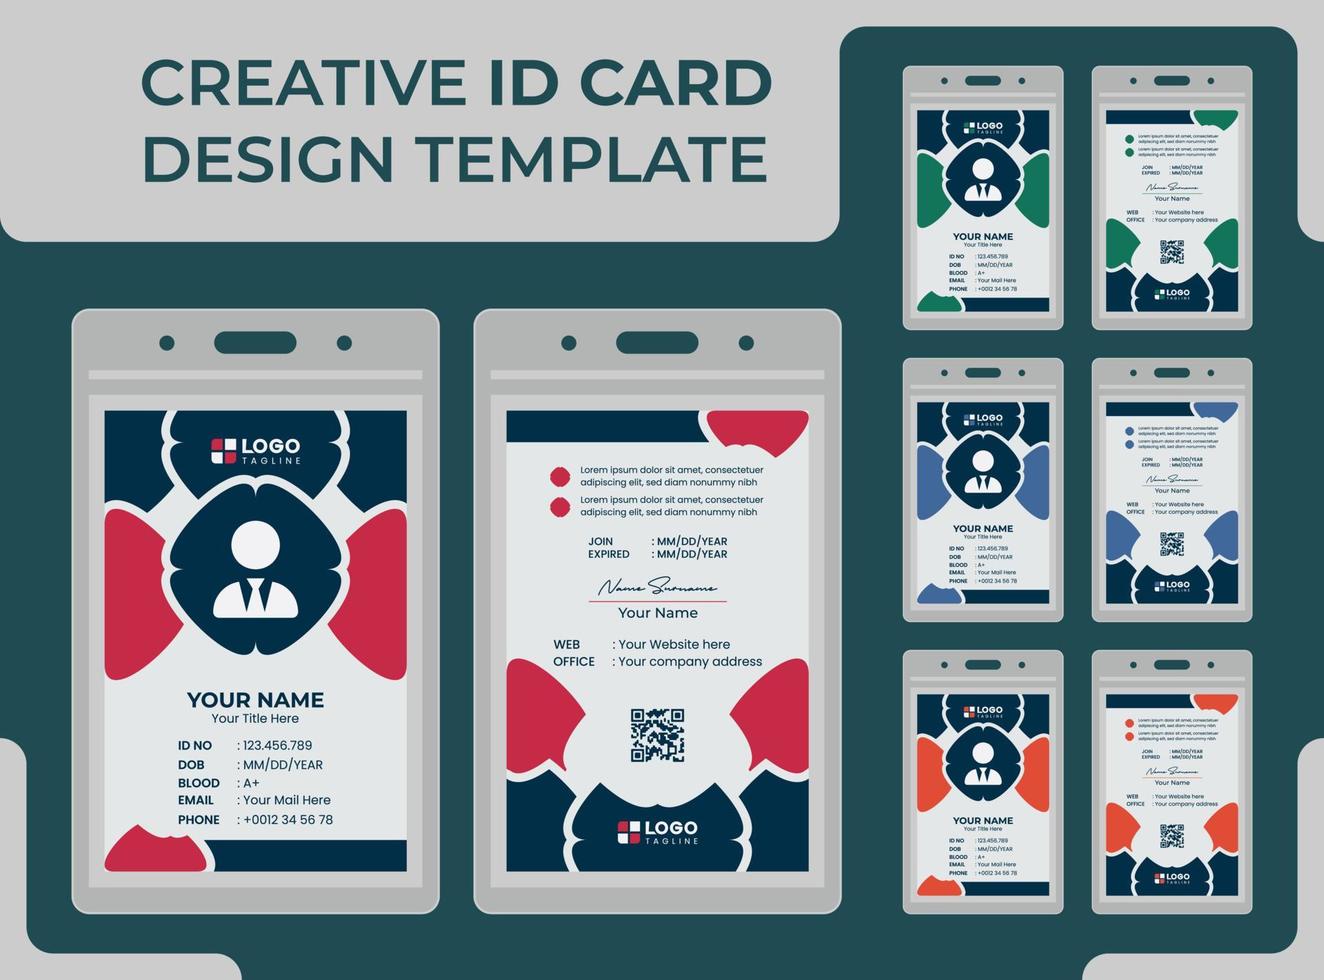 kreative, moderne, einzigartige ID-Karten-Designvorlage vektor